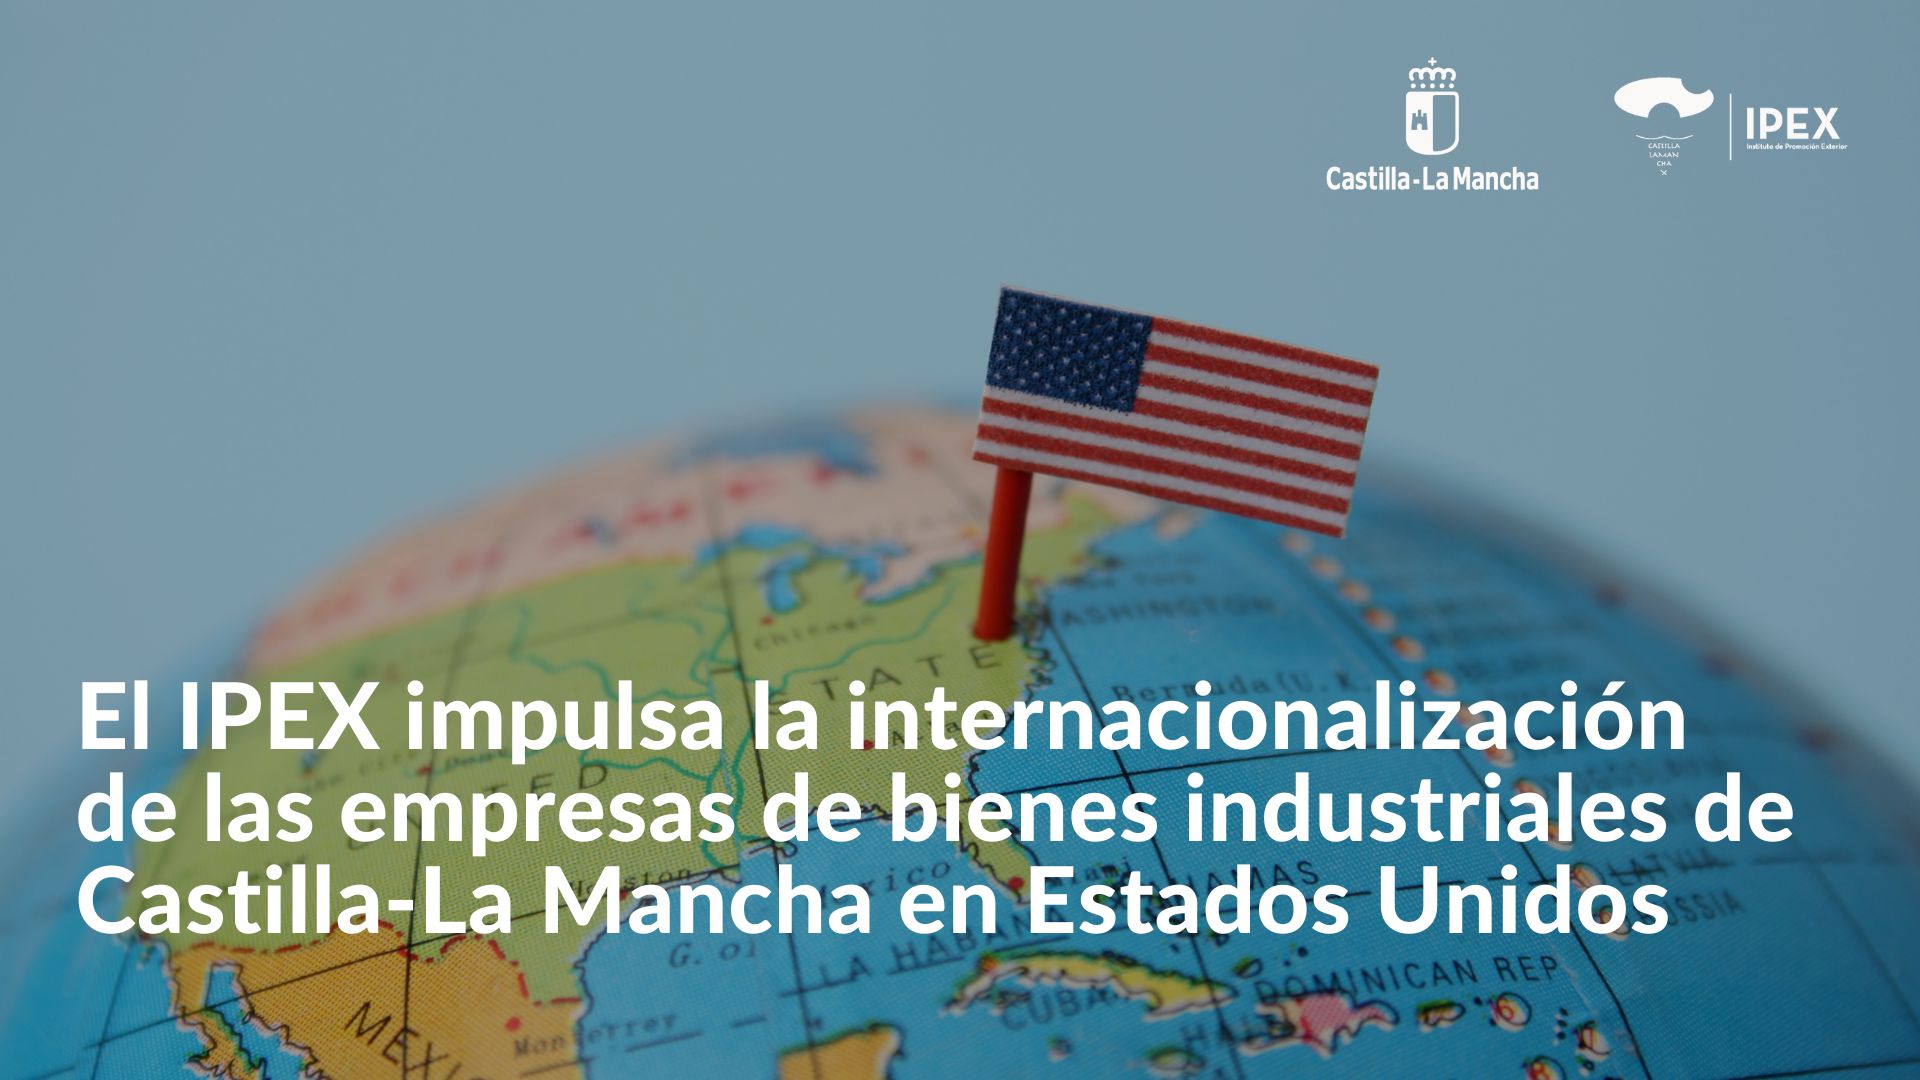 El IPEX impulsa la internacionalización de las empresas de bienes industriales de Castilla-La Mancha en Estados Unidos